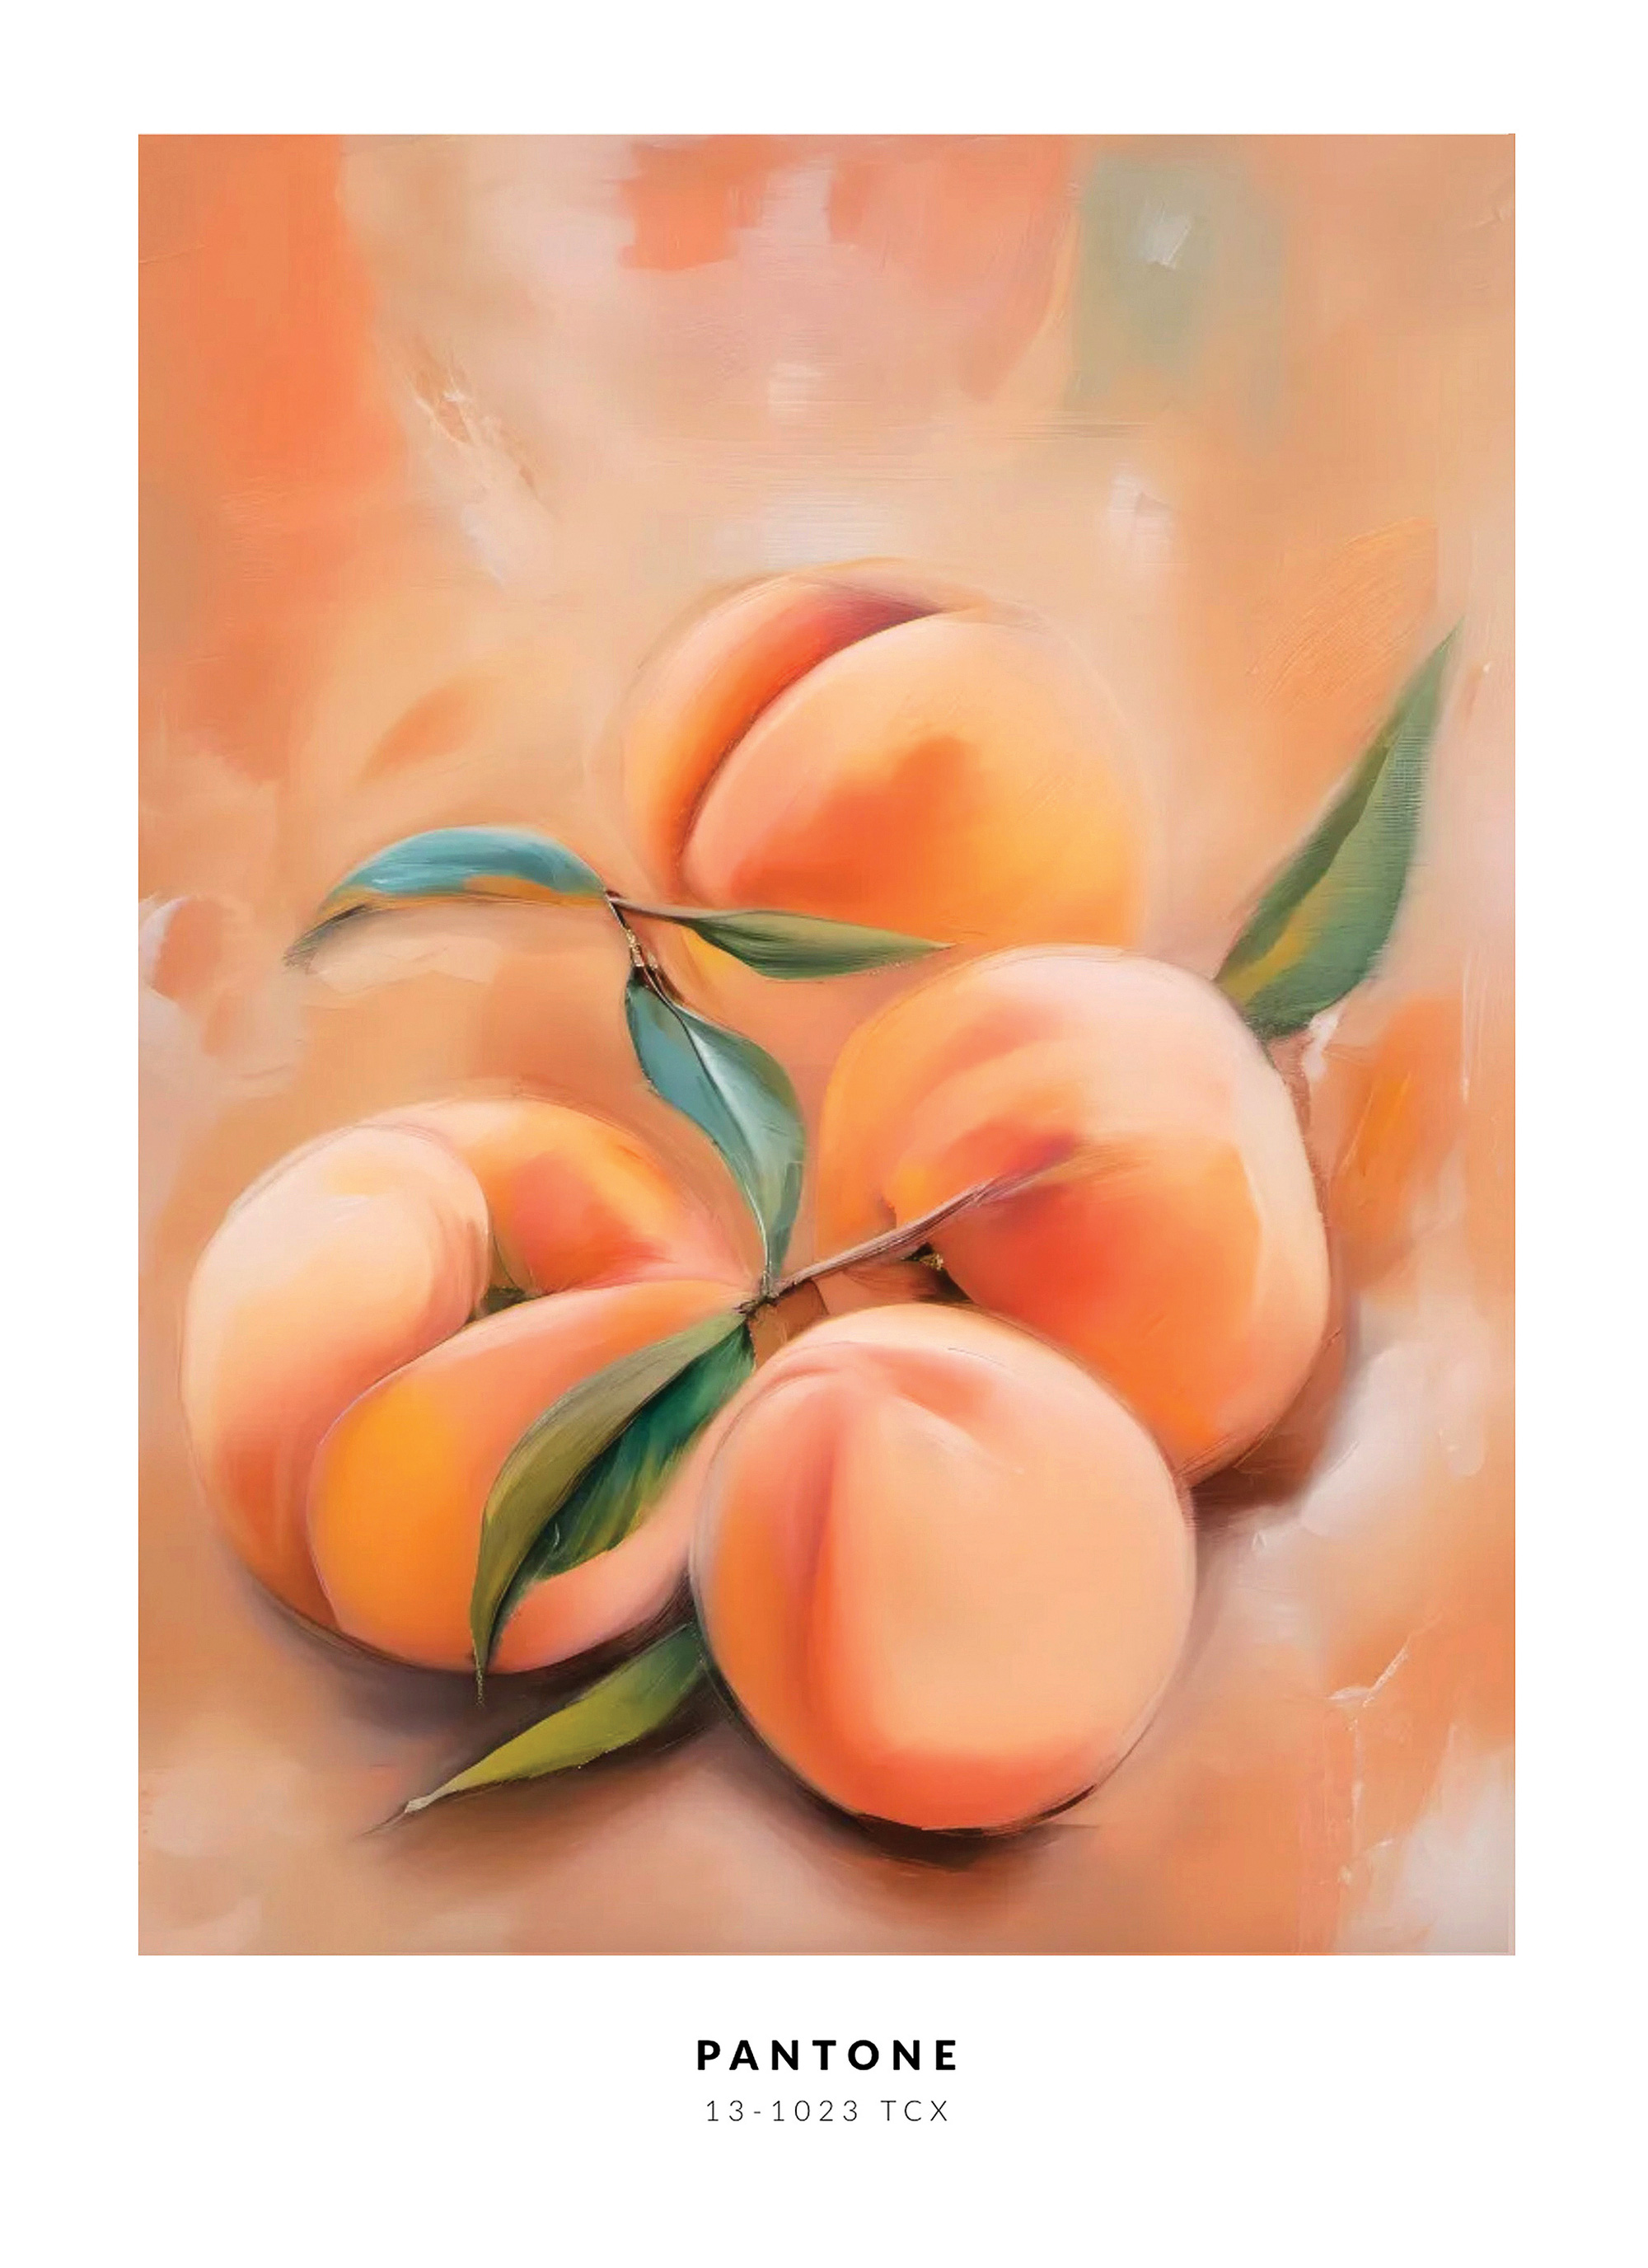 Pantone nghĩ gì khi chọn Peach Fuzz là màu của năm? - Ảnh 2.